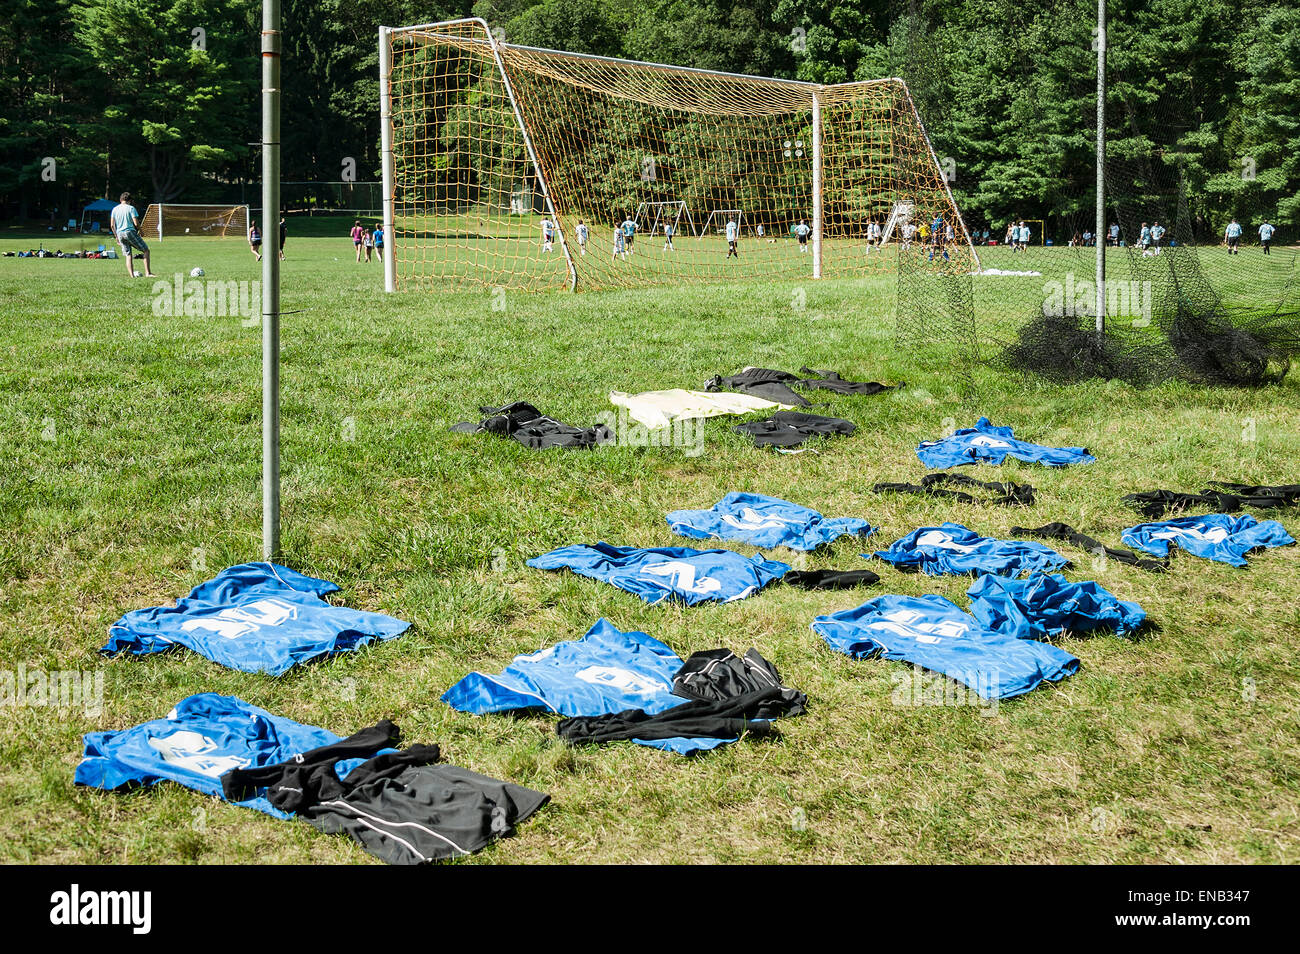 Maillots de football mise à sécher entre les jeux à un tournoi de soccer. Banque D'Images